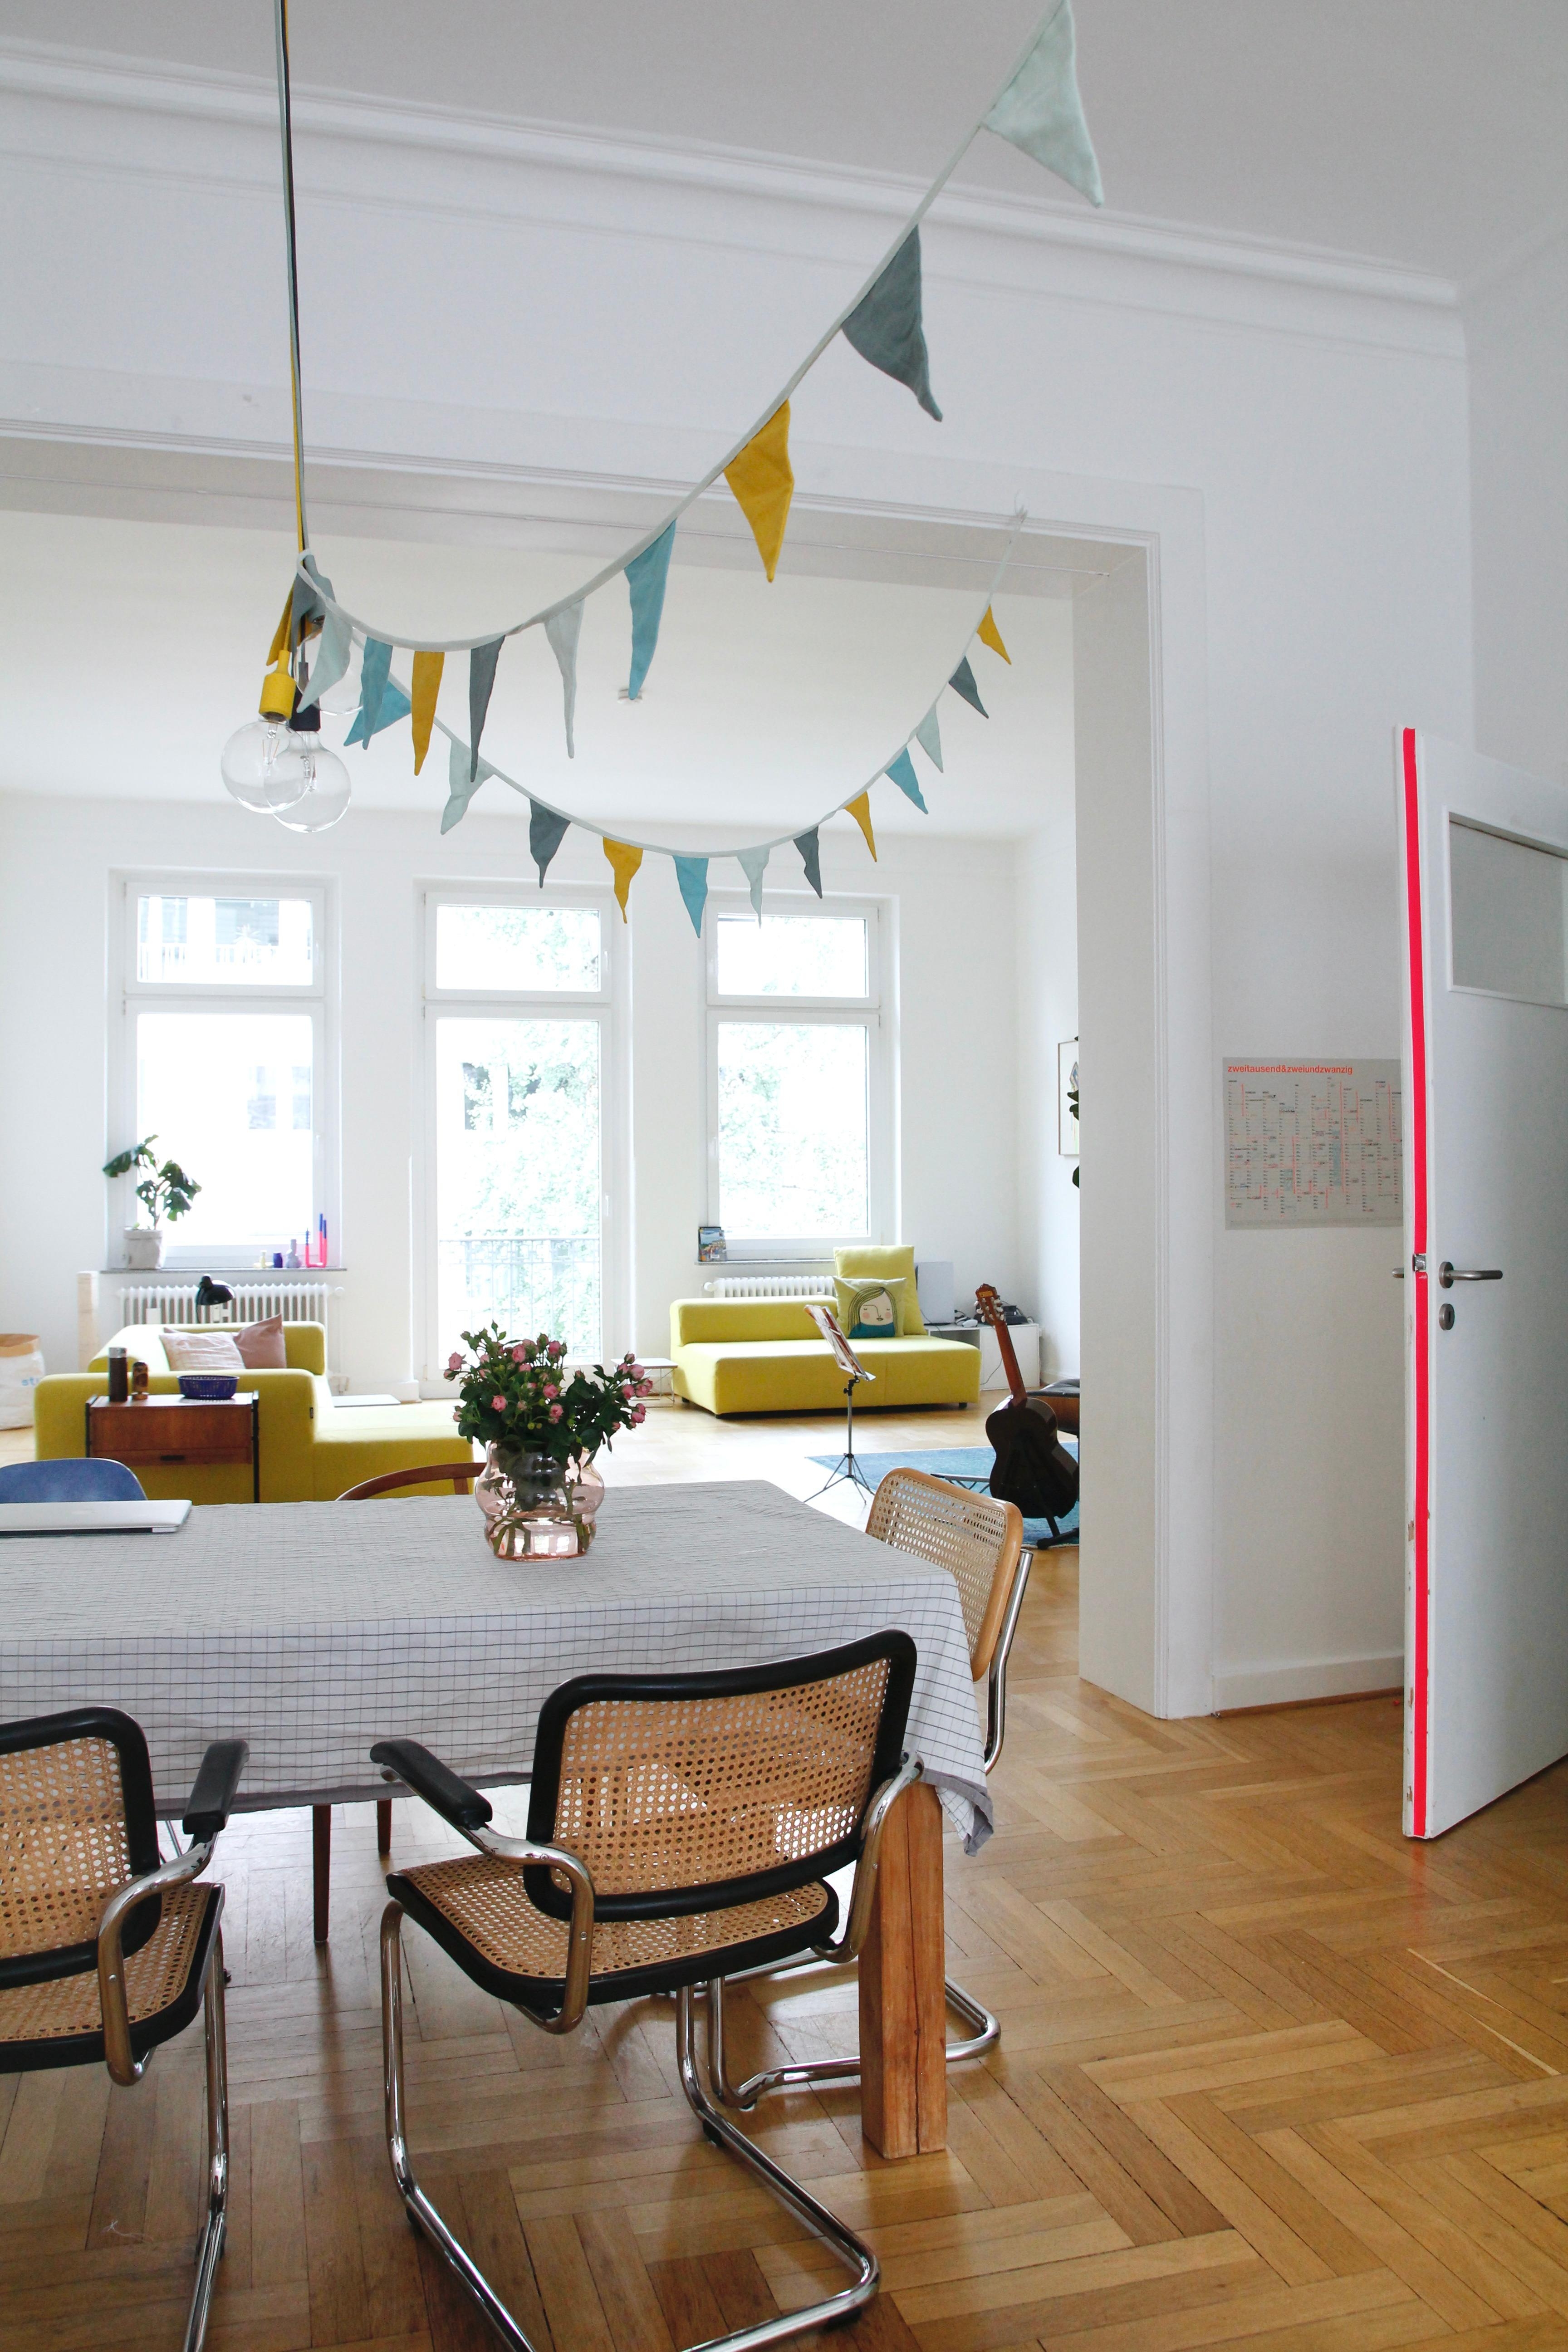 #neon #wohnzimmer #esstisch #teppich #farbe #altbau